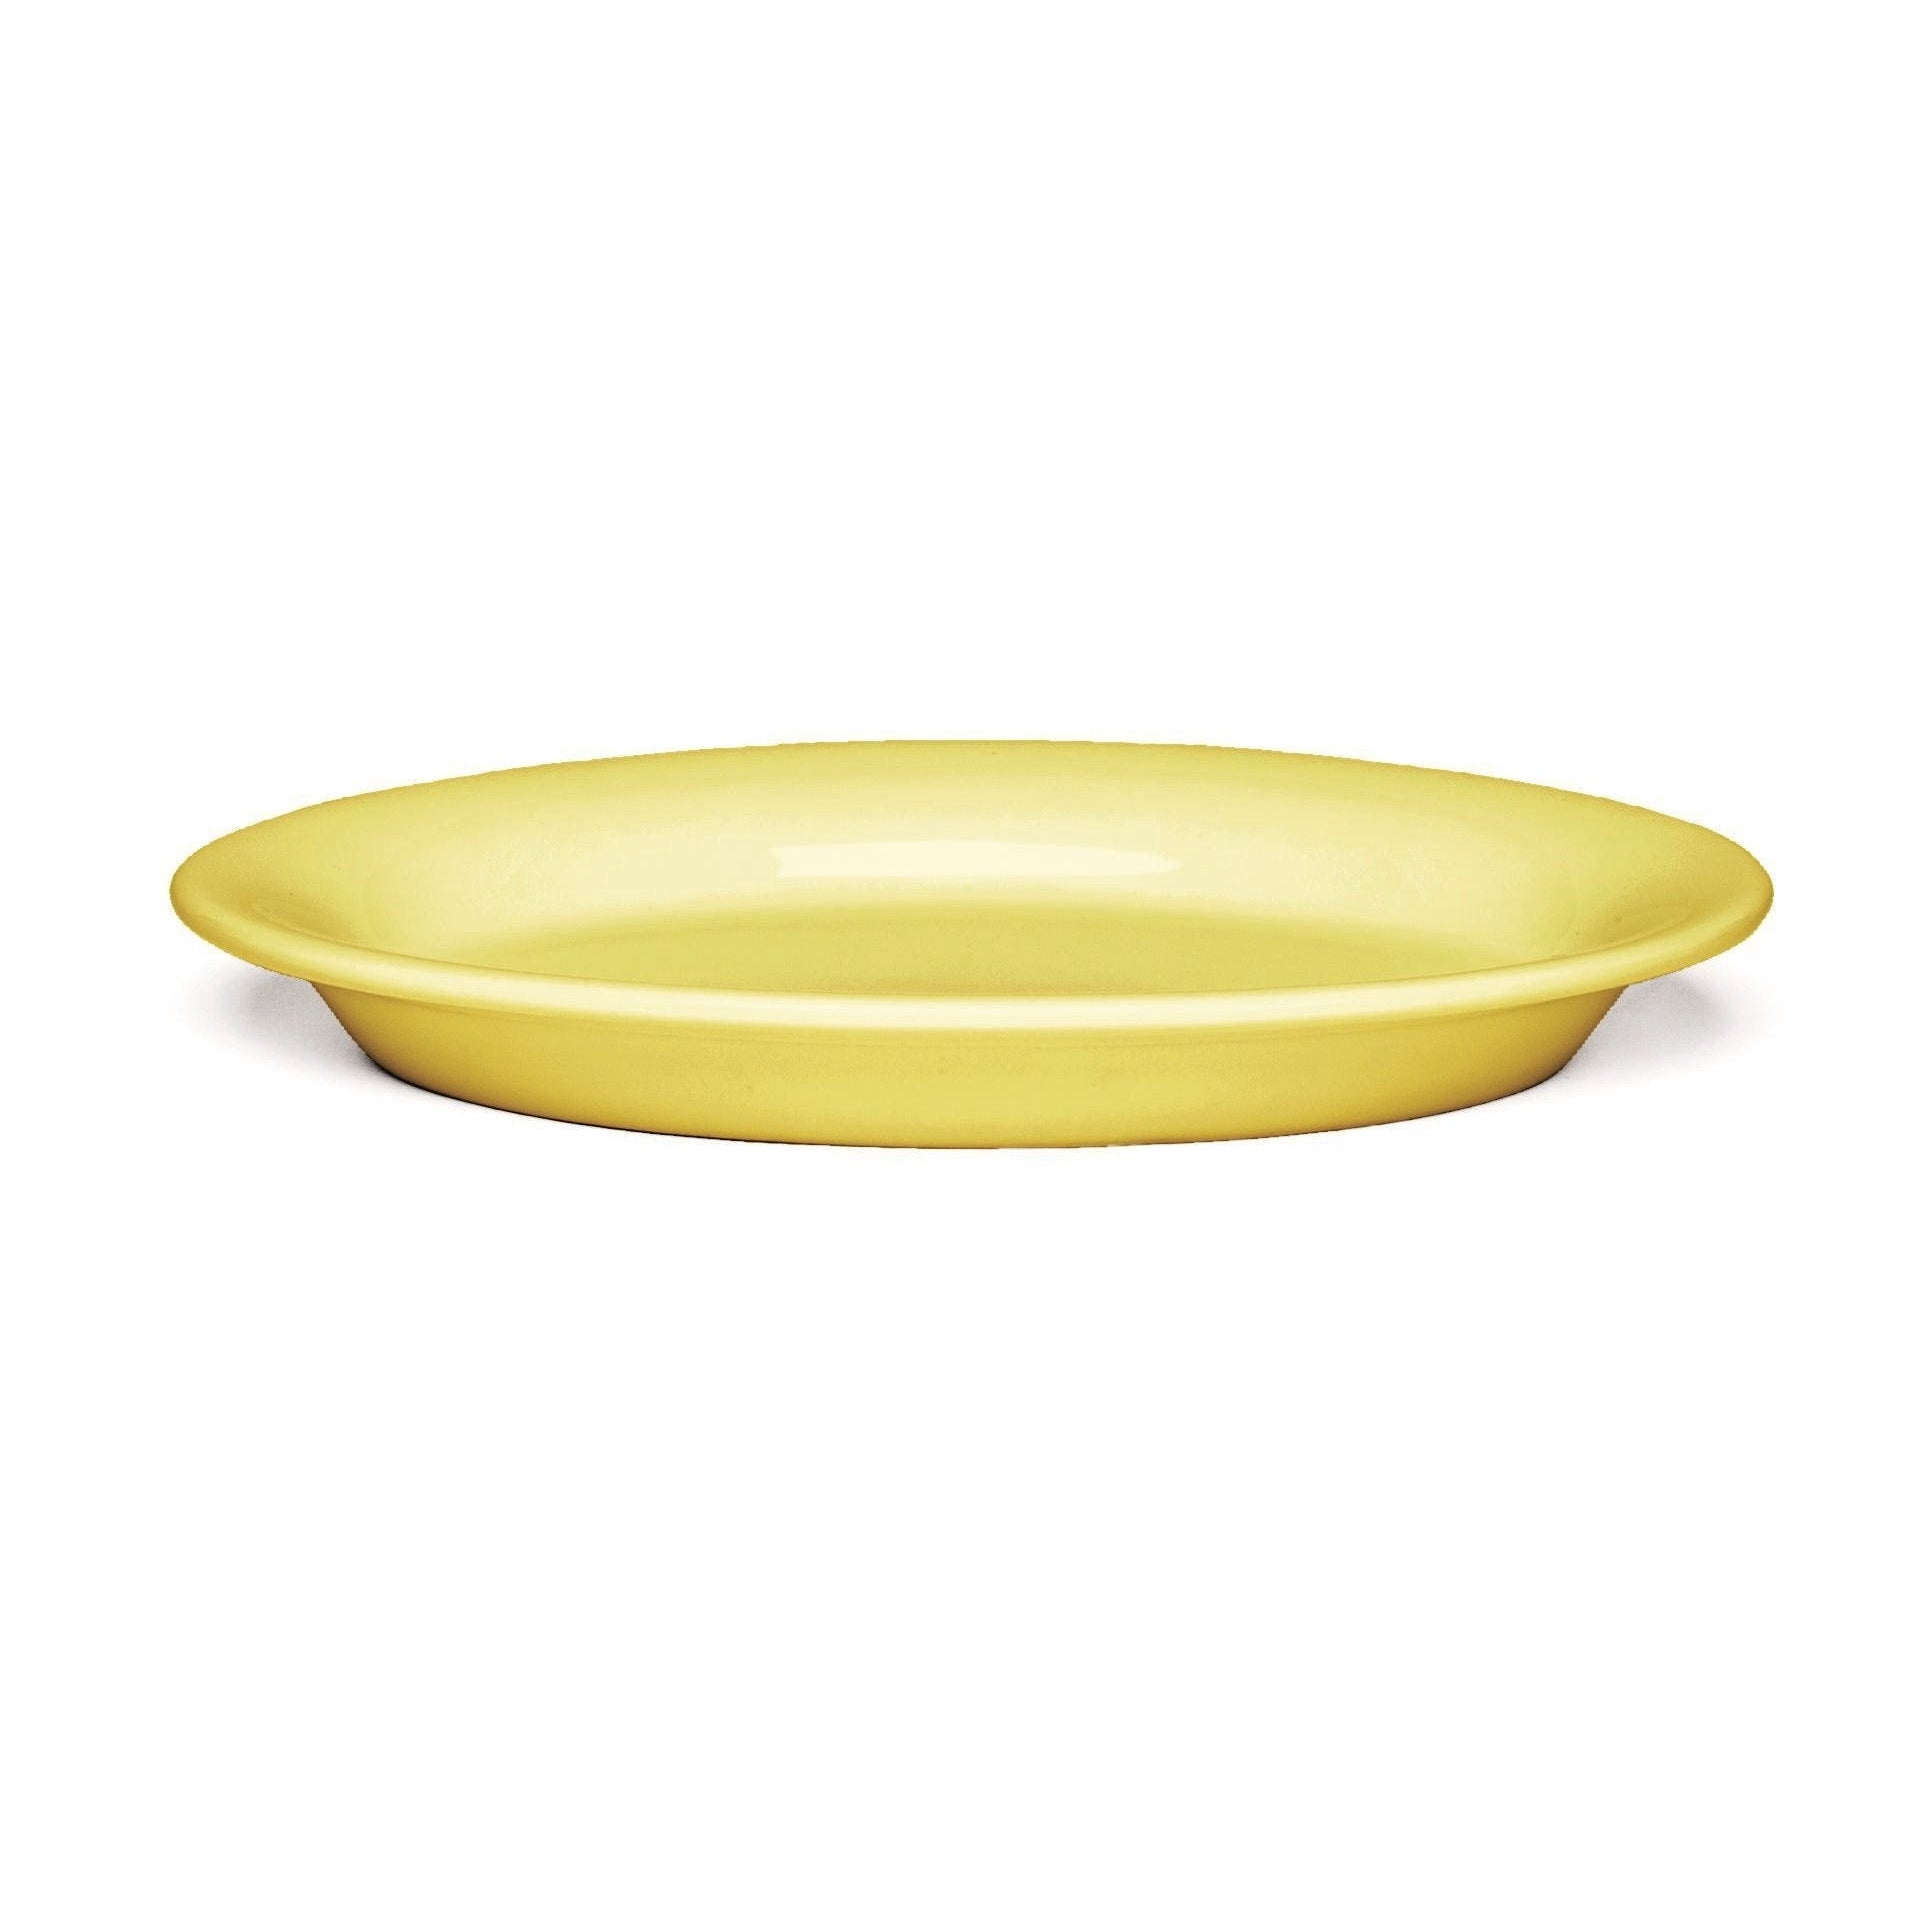 Kähler Ursula Plate amarillo, Ø22 cm